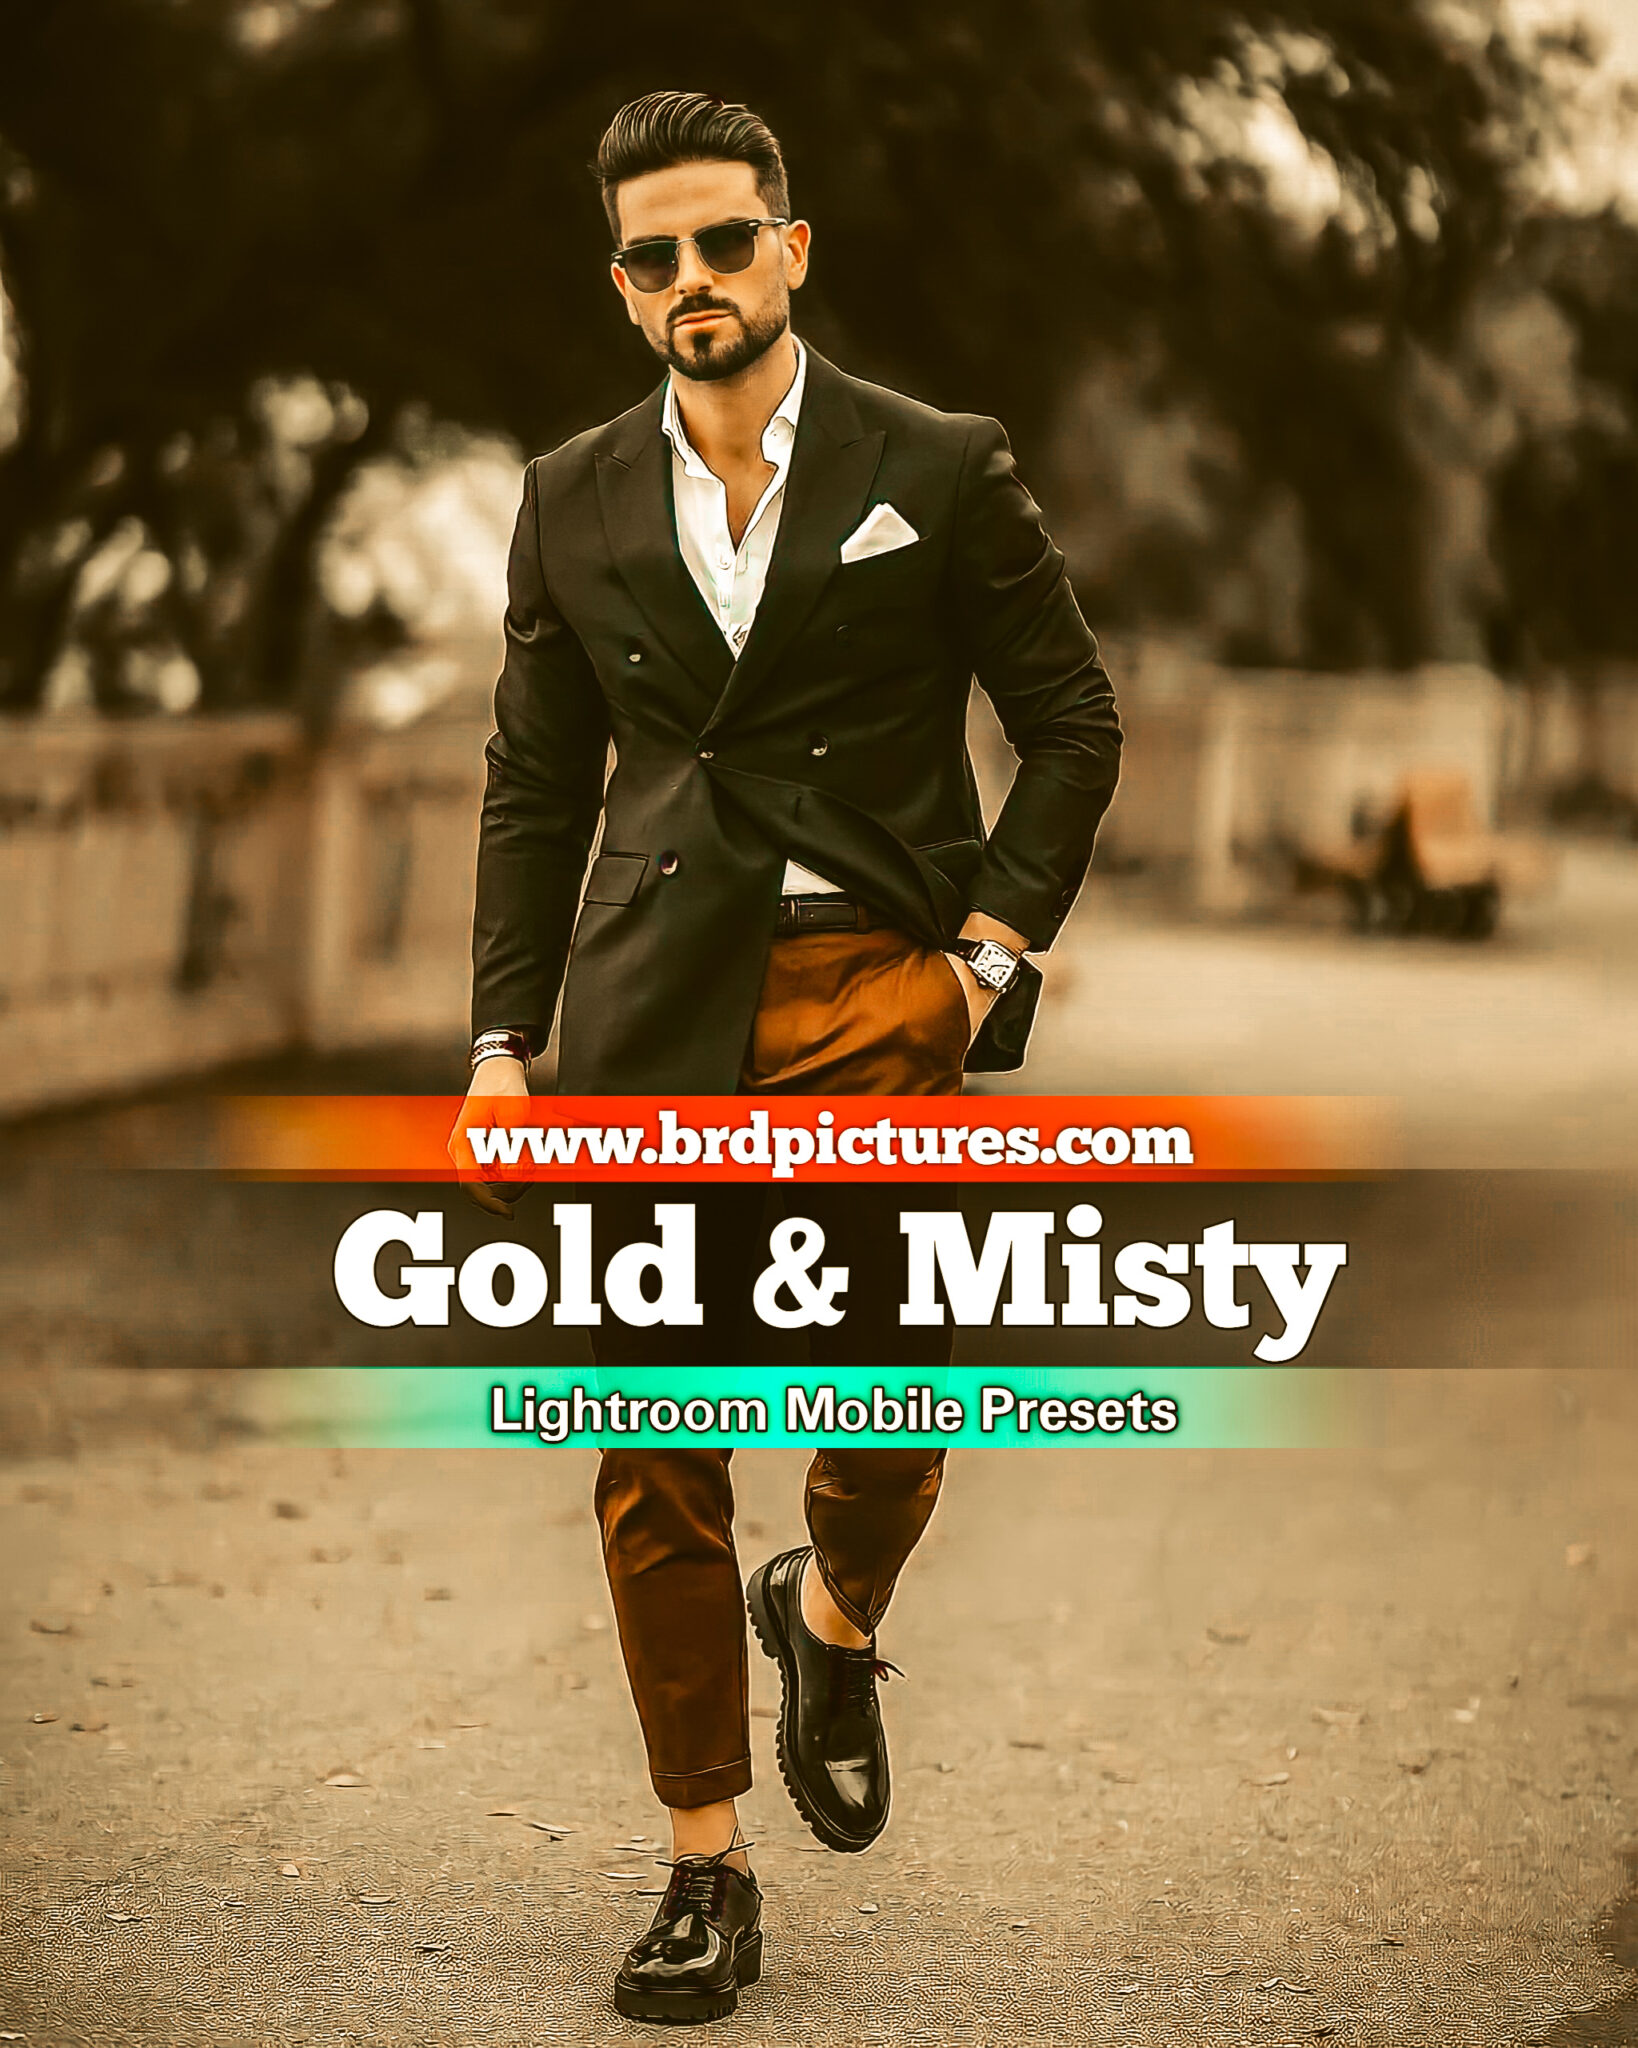 Gold And Misty Mobile Lightroom Presets Download